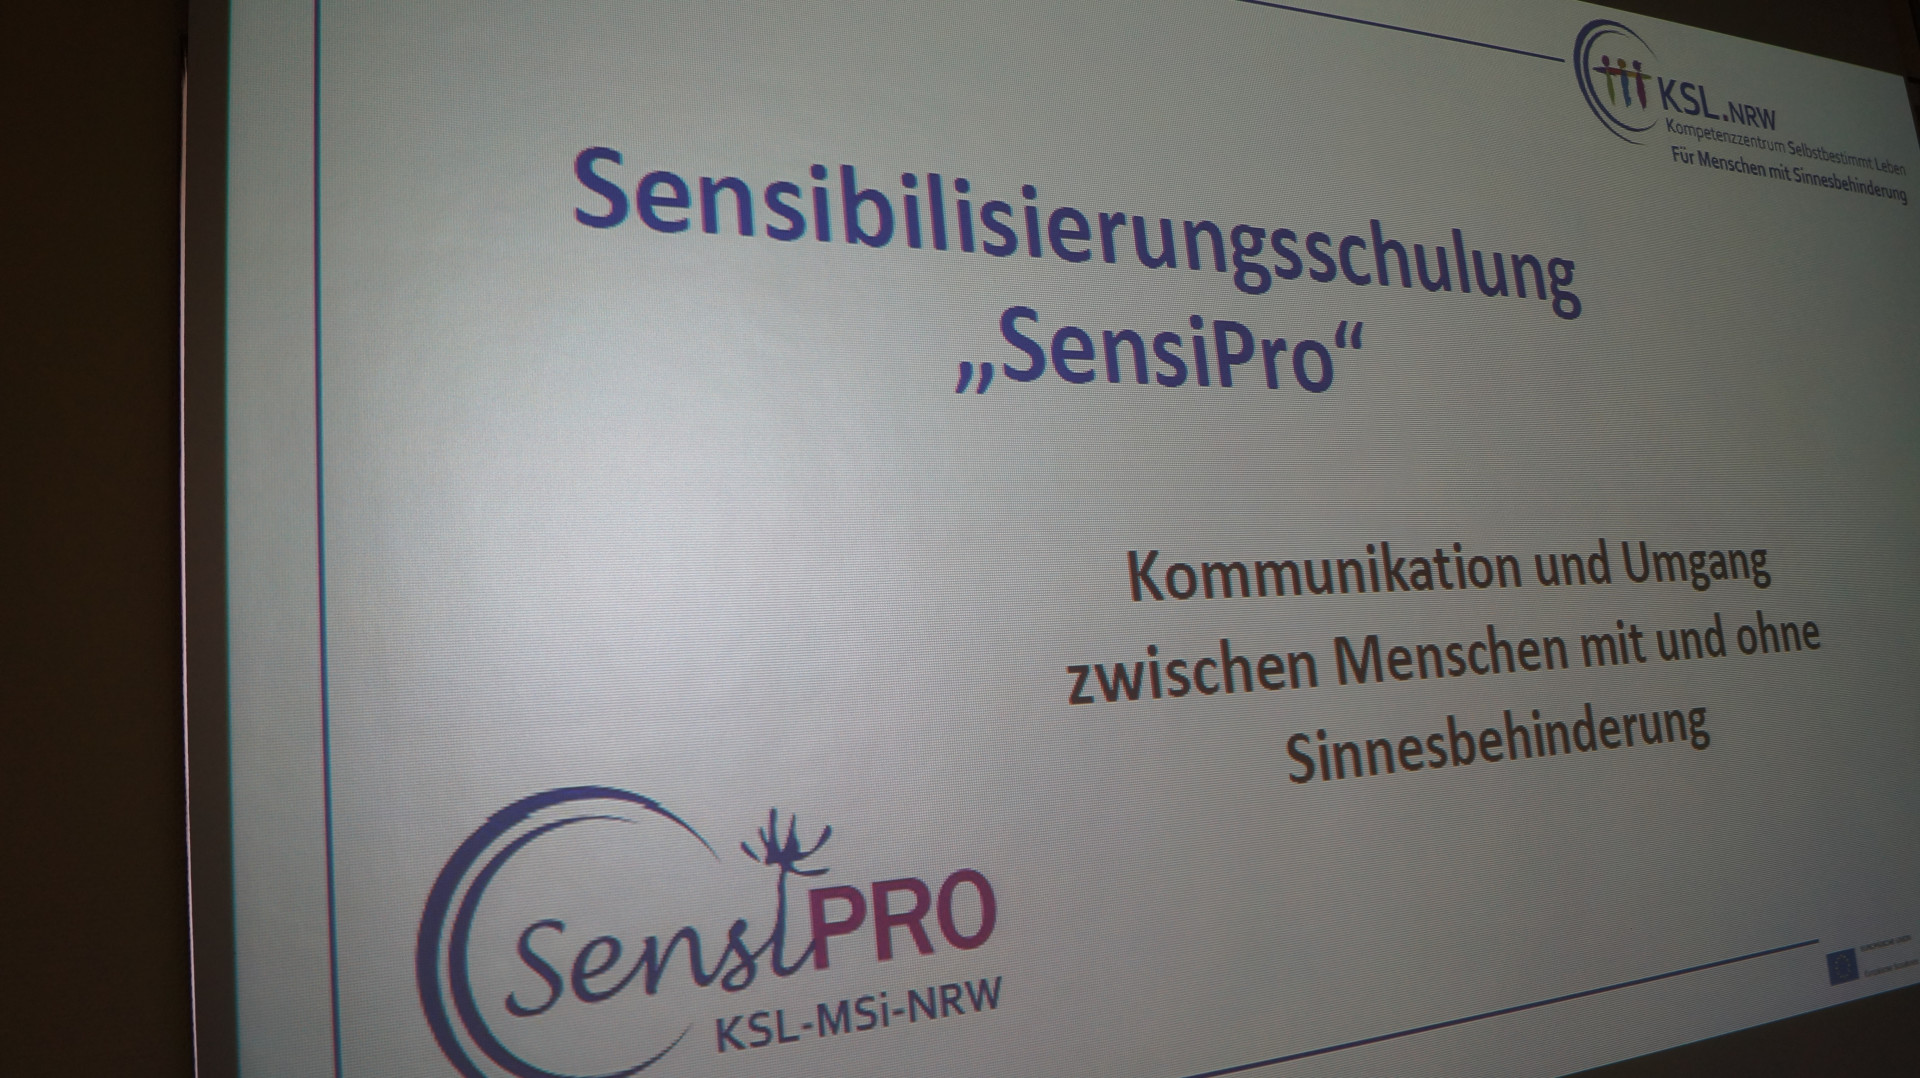 Titel auf einer Präsentation "Sensibilisierungsschulung: SensiPro"